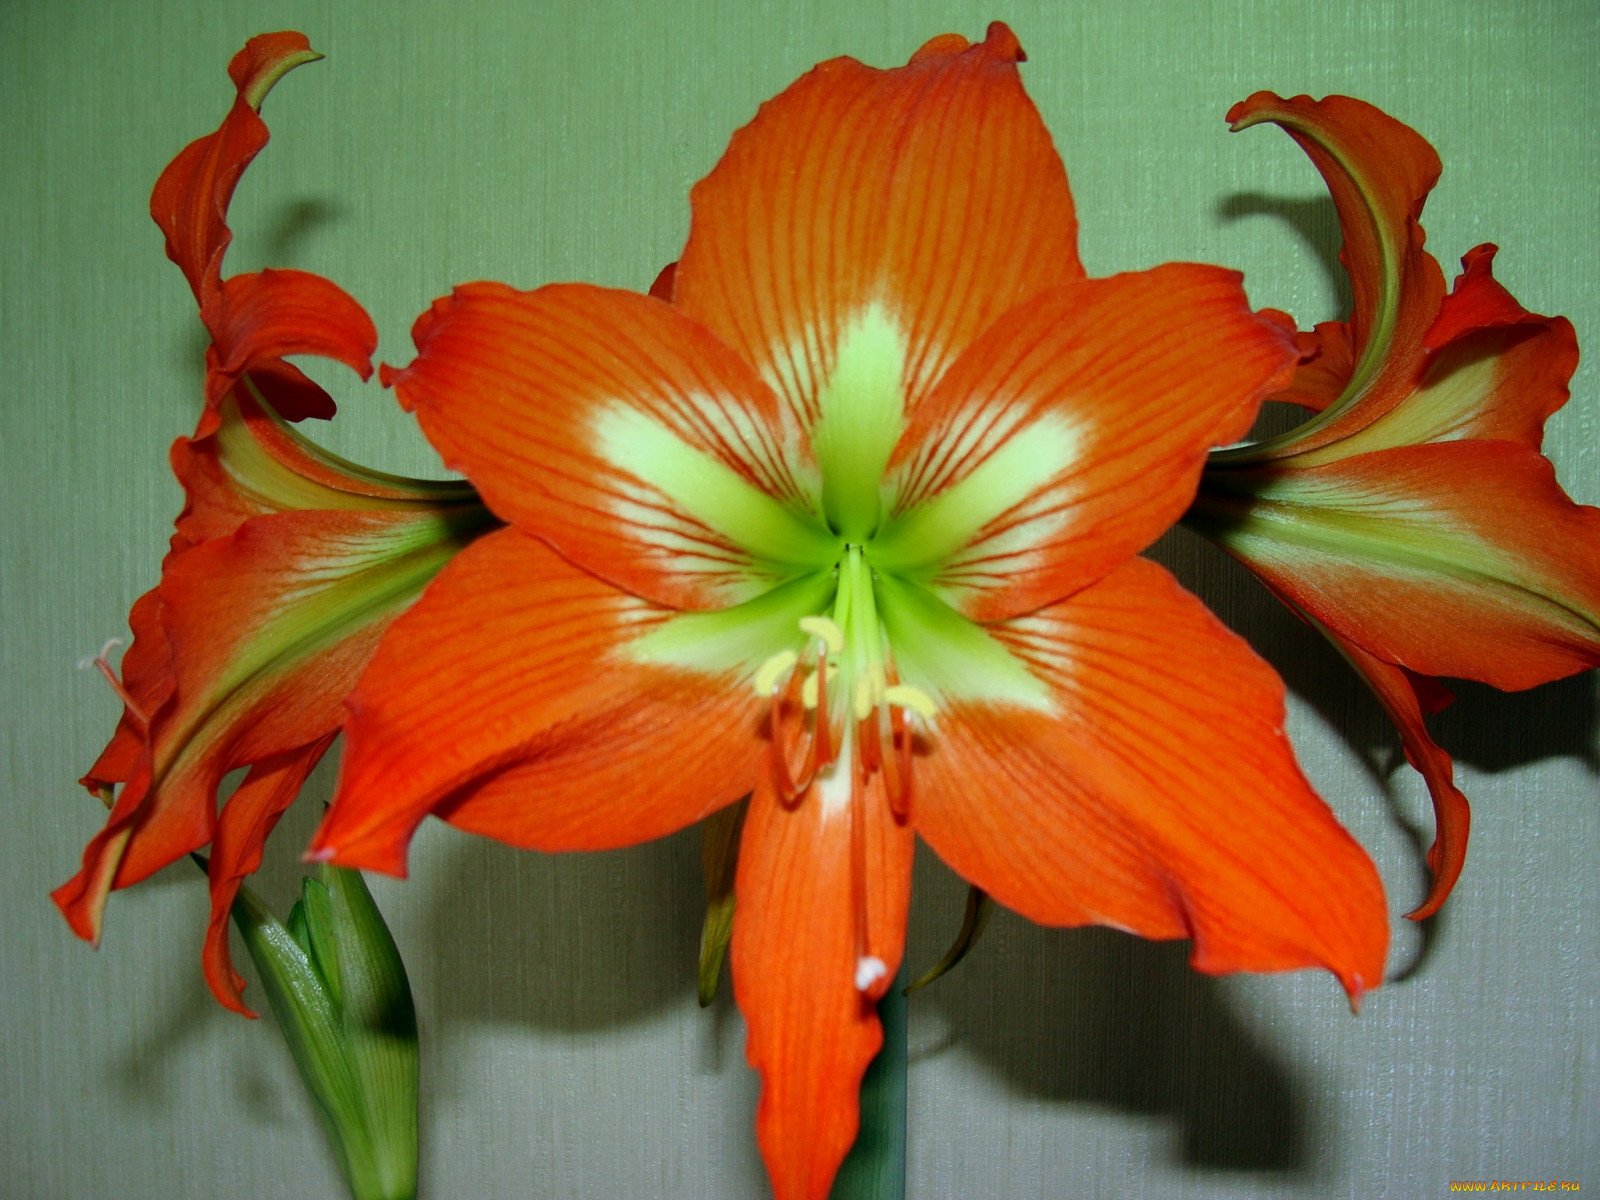 Похож на гиппеаструм. Гиппеаструм амариллис оранжевый. Гиппеаструм цветок оранжевый. Лилия гиппеаструм. Комнатные цветы гиппеаструм оранжевый.